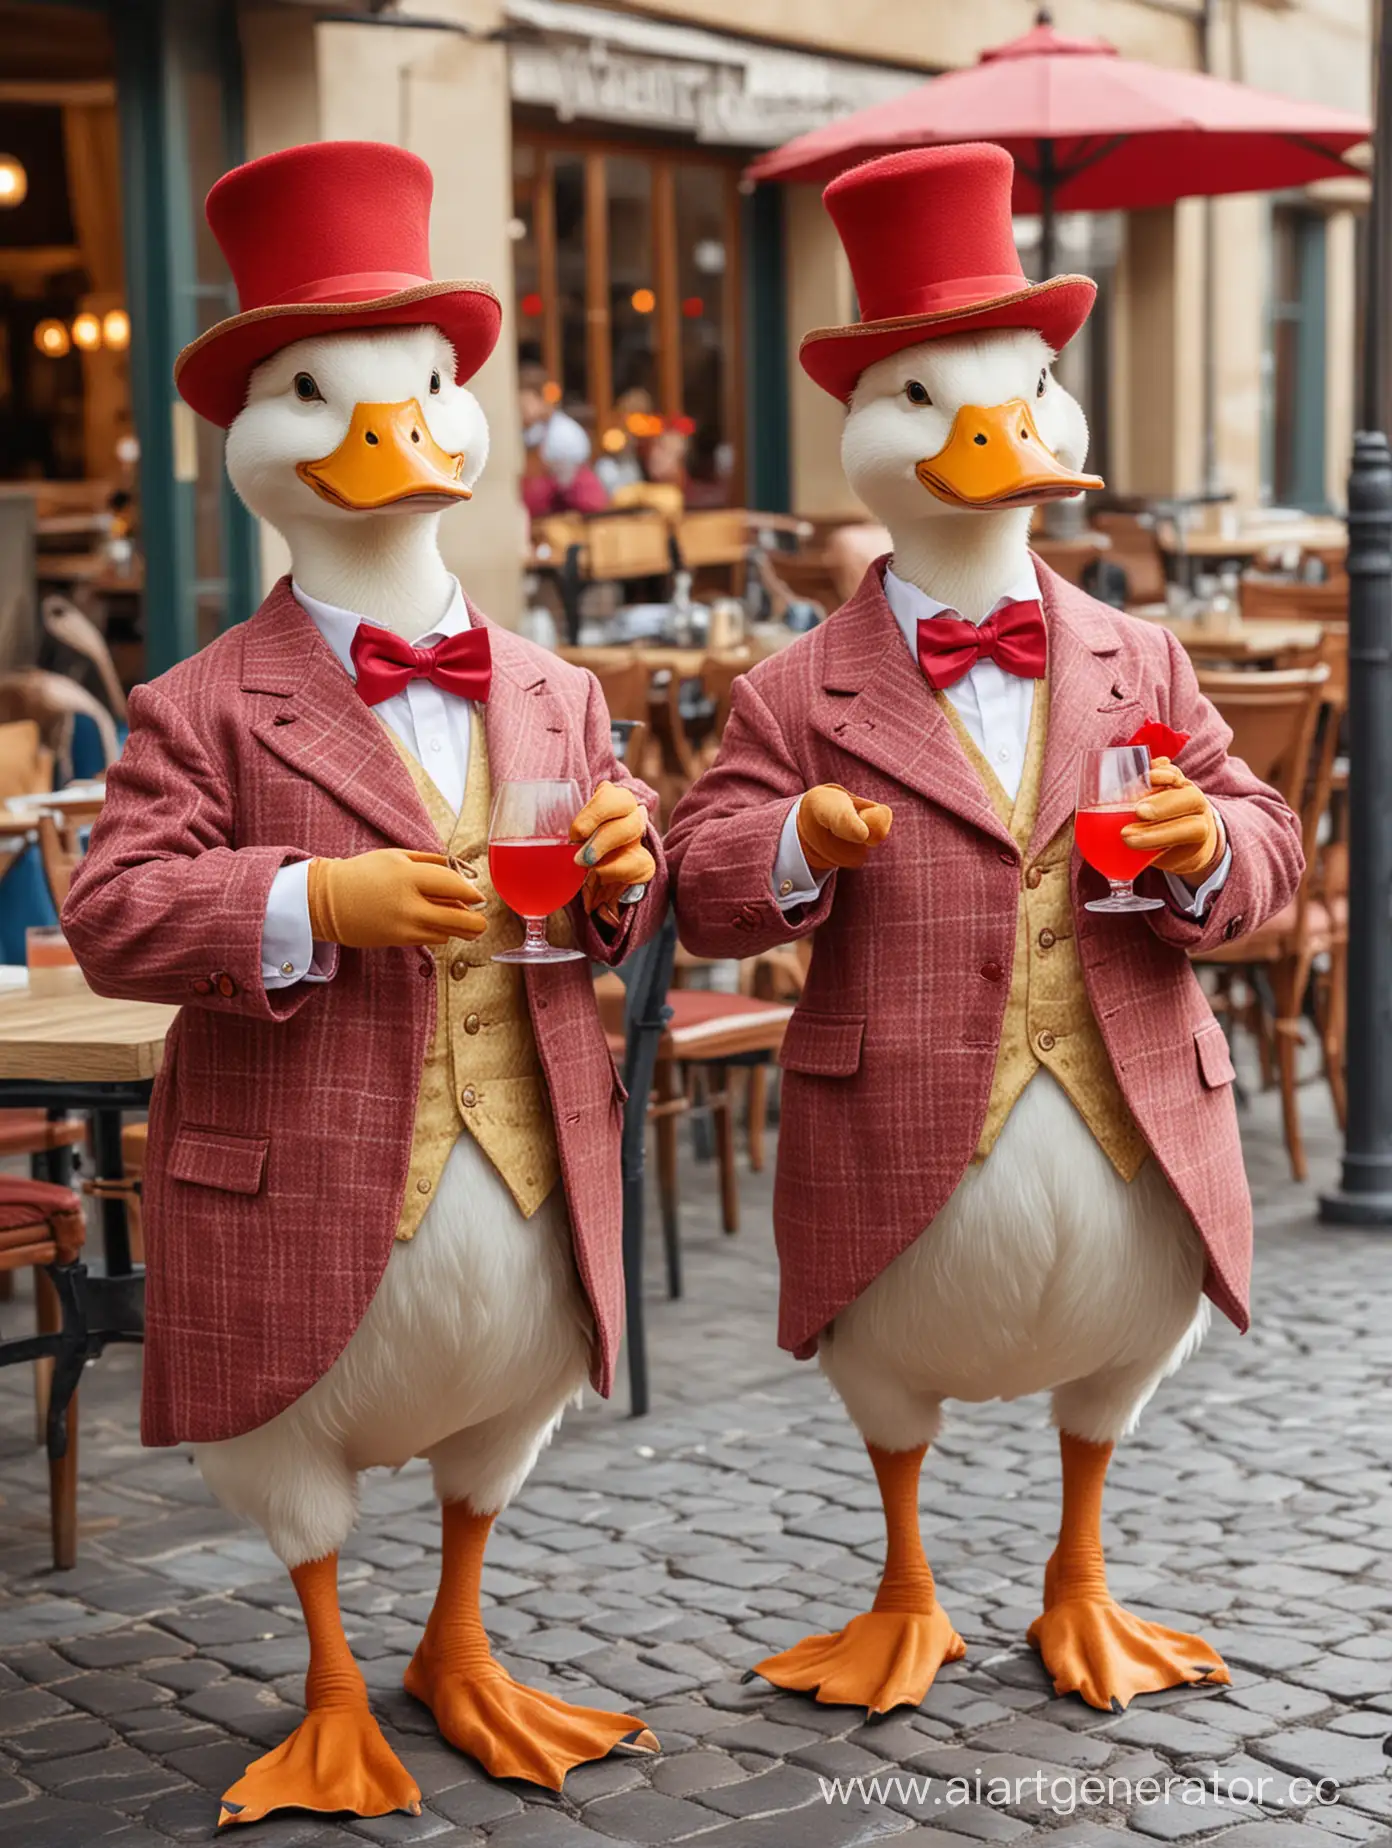 Две утки в человеческих платьях, две утки в шляпках и платьях , утки протягивают бокал с красным коктейлем, сидят на фоне ресторана